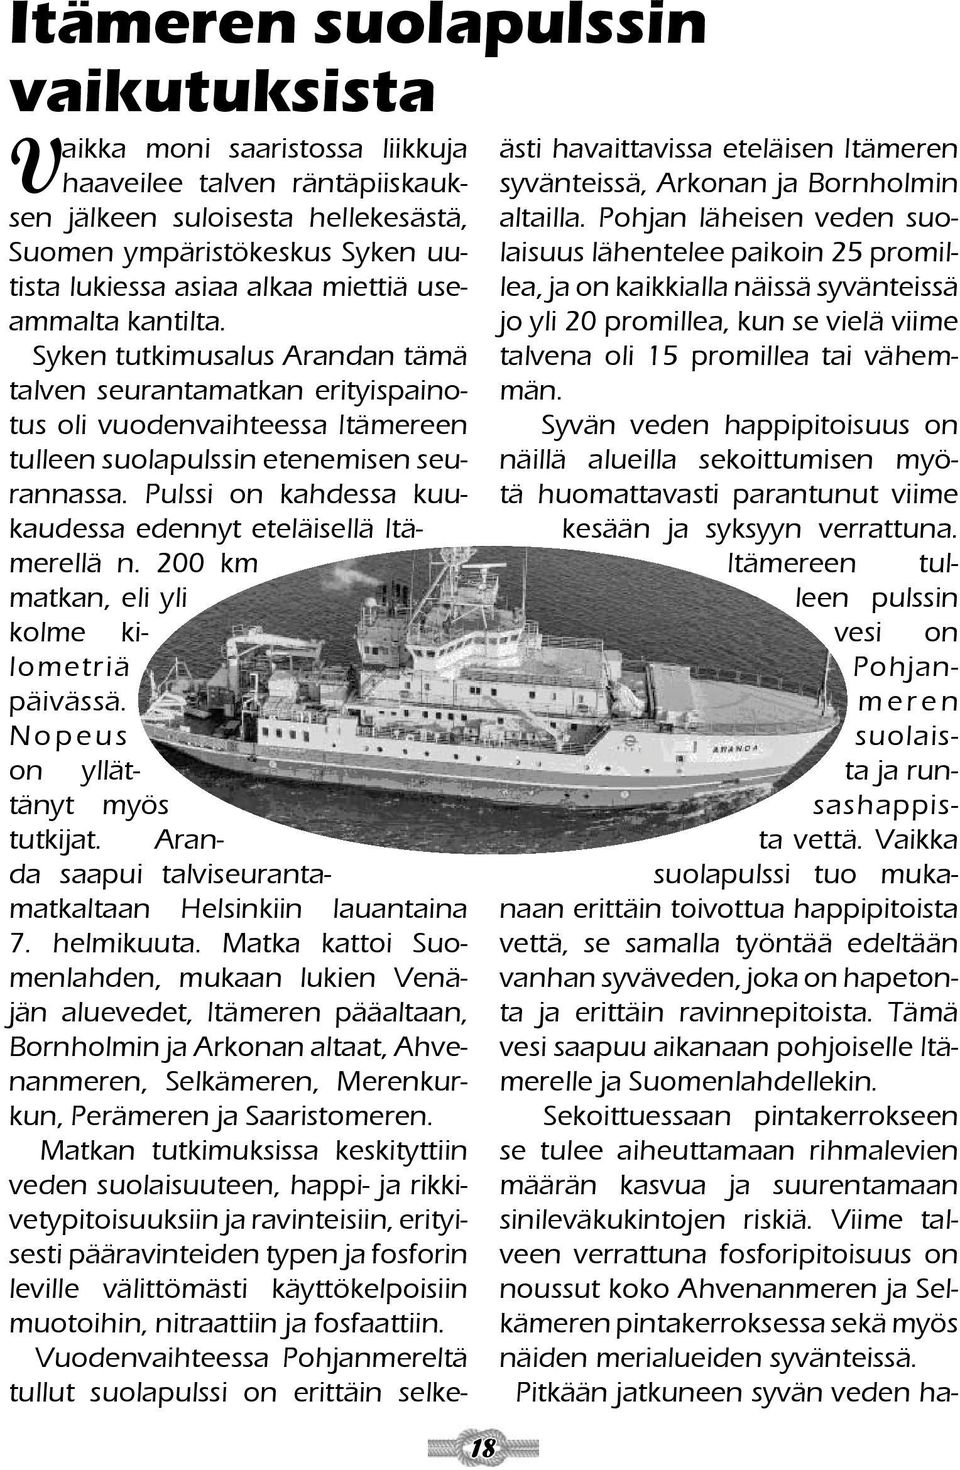 Pulssi on kahdessa kuukaudessa edennyt eteläisellä Itämerellä n. 200 km matkan, eli yli kolme kilometriä päivässä. N o p e u s on yllättänyt myös tutkijat.